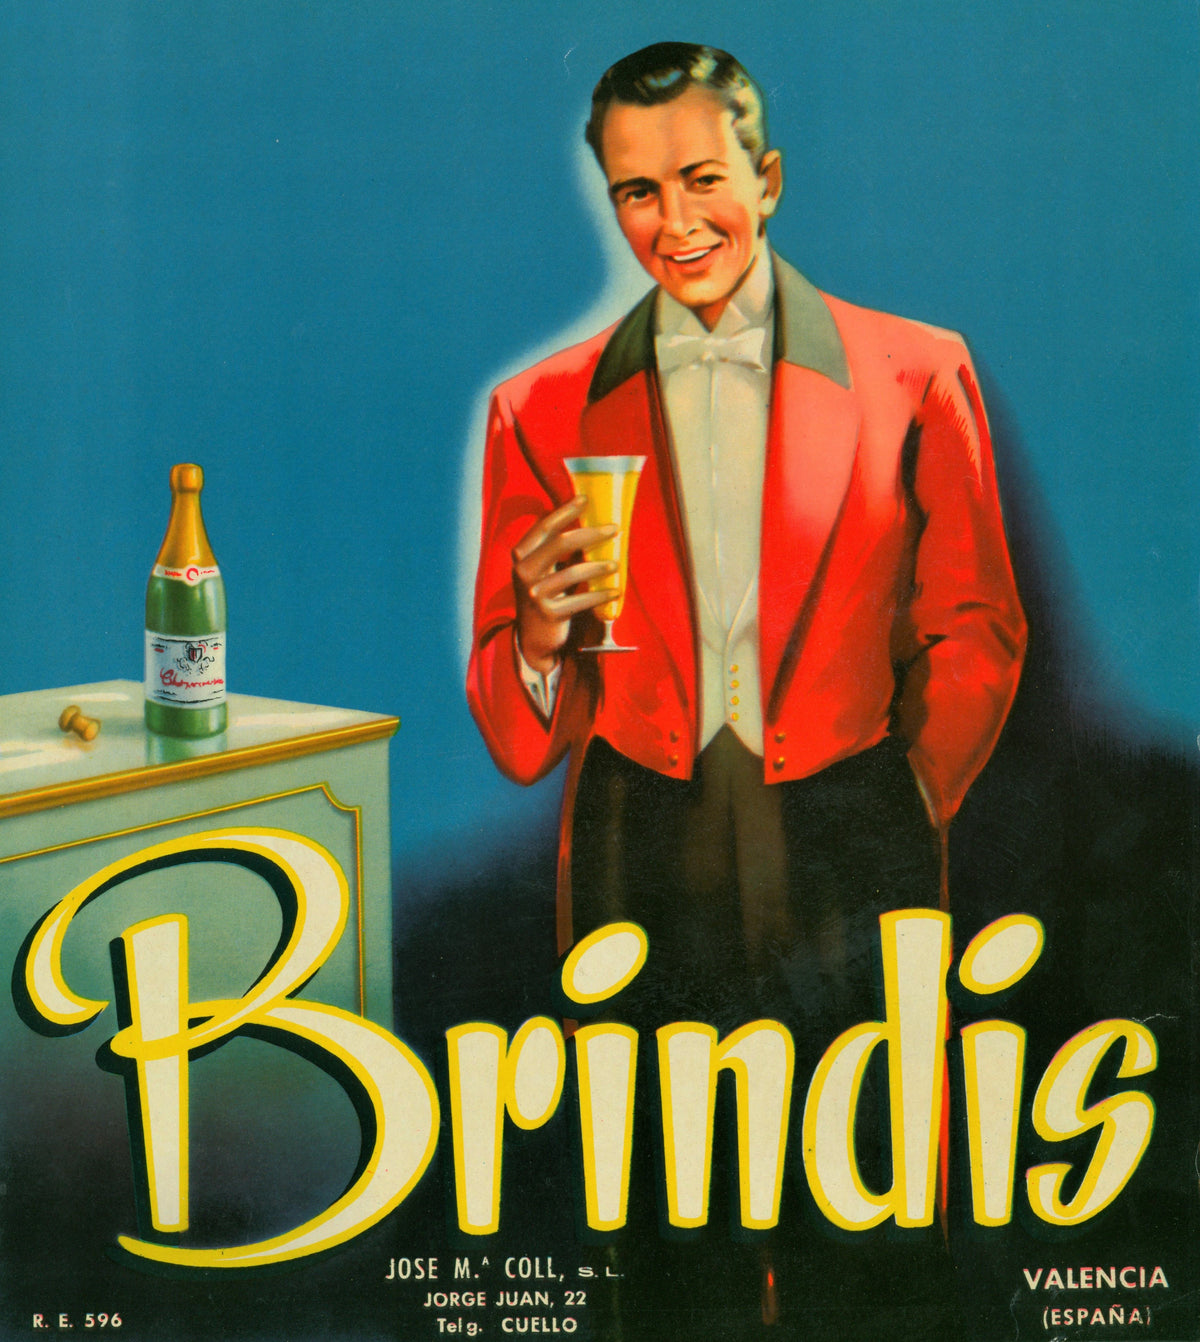 Brindis- Spanish Crate Label - Authentic Vintage Antique Print